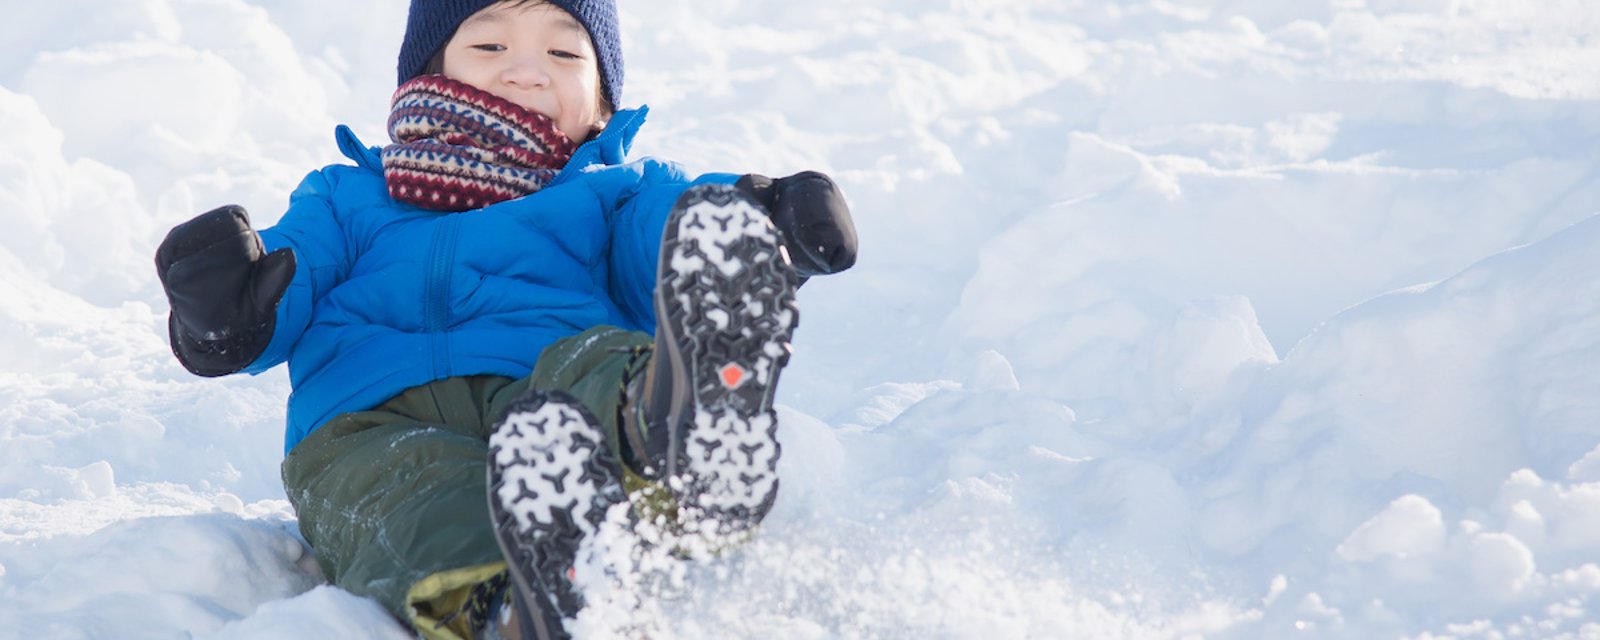 Le froid ne rend pas les enfants malades: envoyons-les jouer dehors!